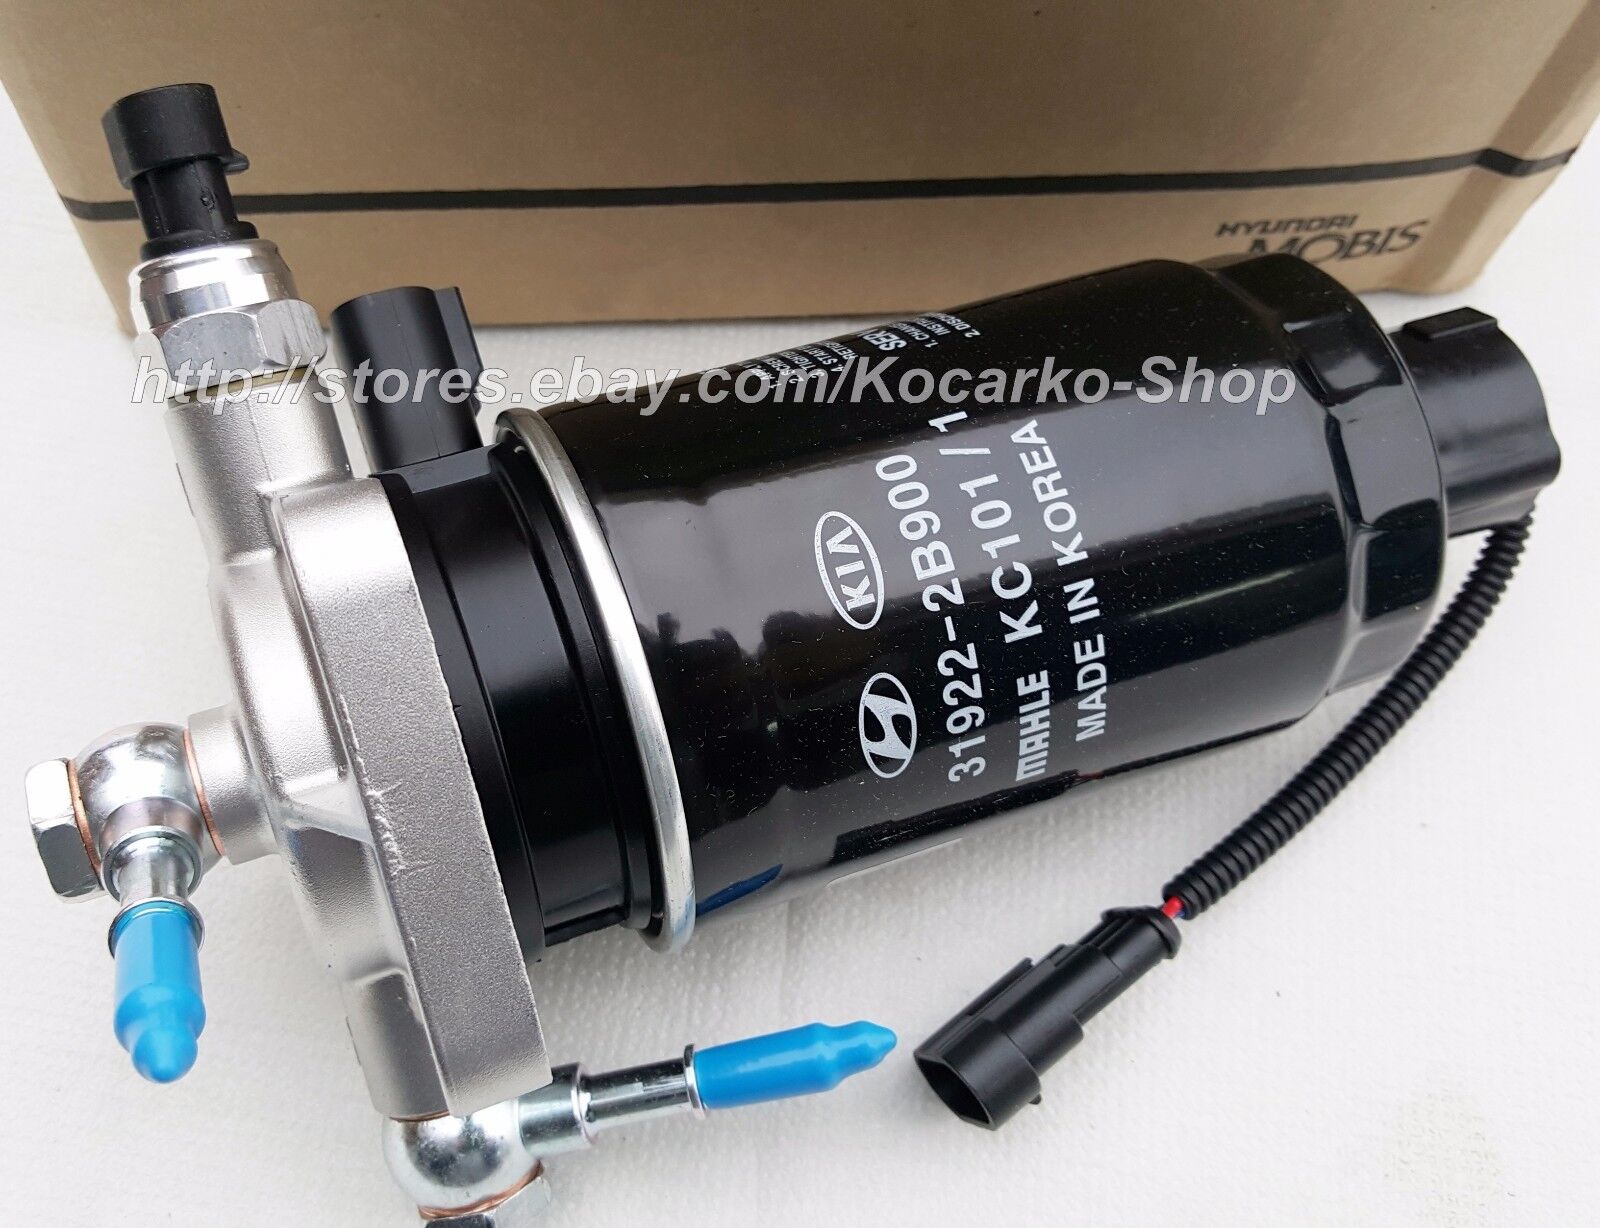 Fuel Filter ASSY For Hyundai Veracruz ix55 3.0L-S D6EA Engine 07-11 #31970-3J001